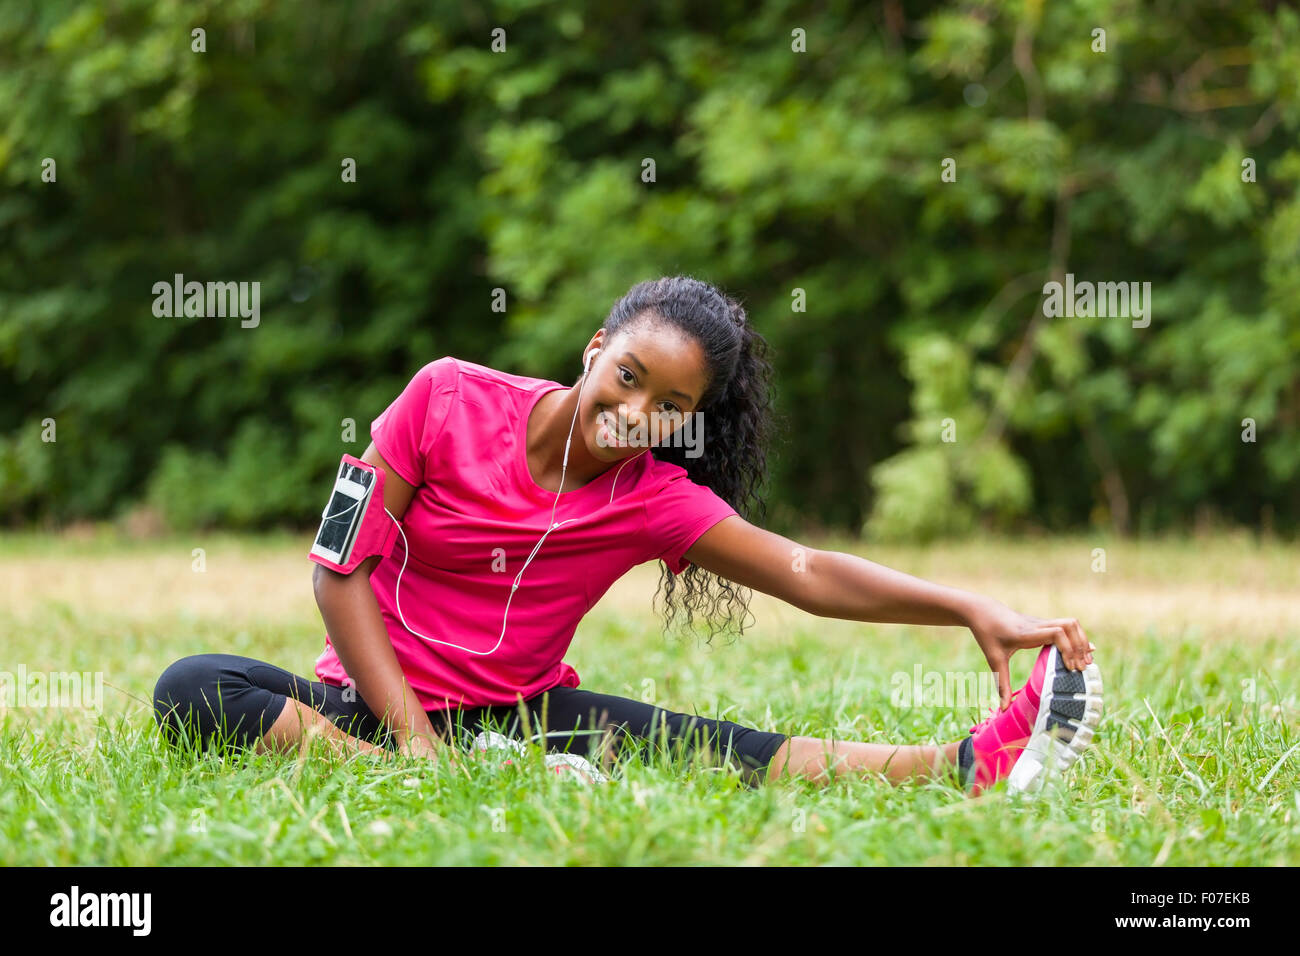 Afroamerikanische Frau Jogger stretching - Fitness, Menschen und gesunde Lebensweise Stockfoto